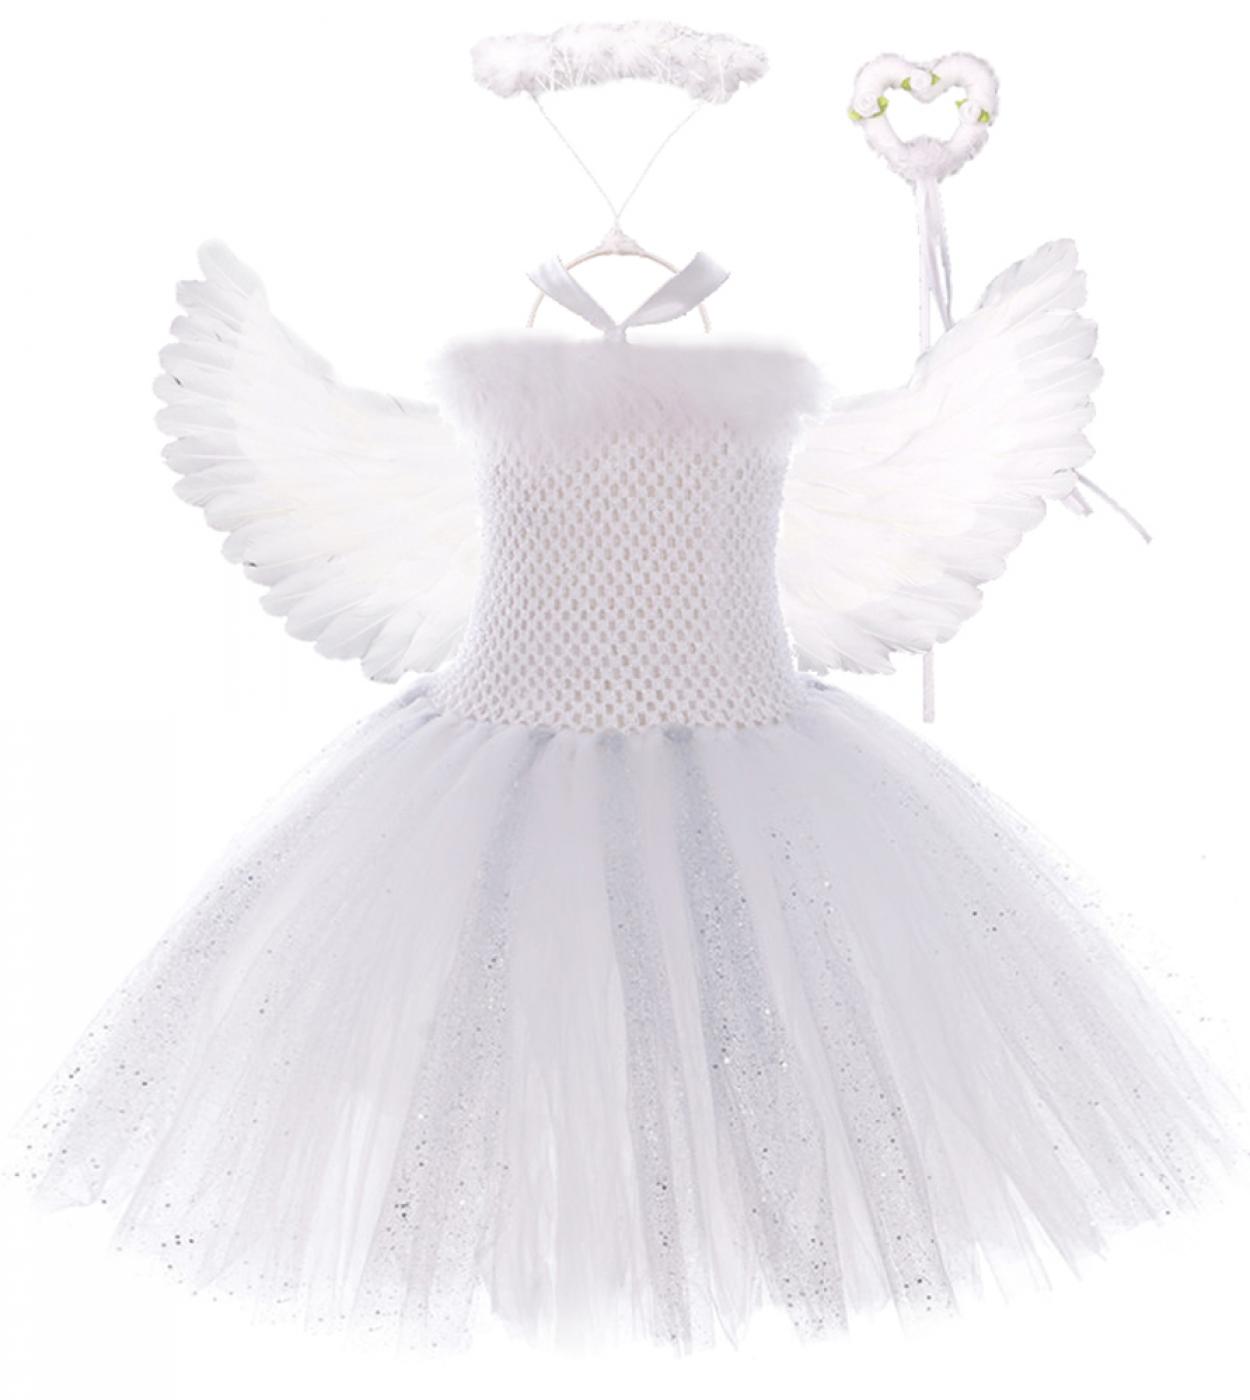 פאייטים כסף לבן כנפי מלאך שמלת טוטו לילדות נסיכה חג המולד תחפושות ראש השנה ילדים ילדה שמלות פיות ל-b